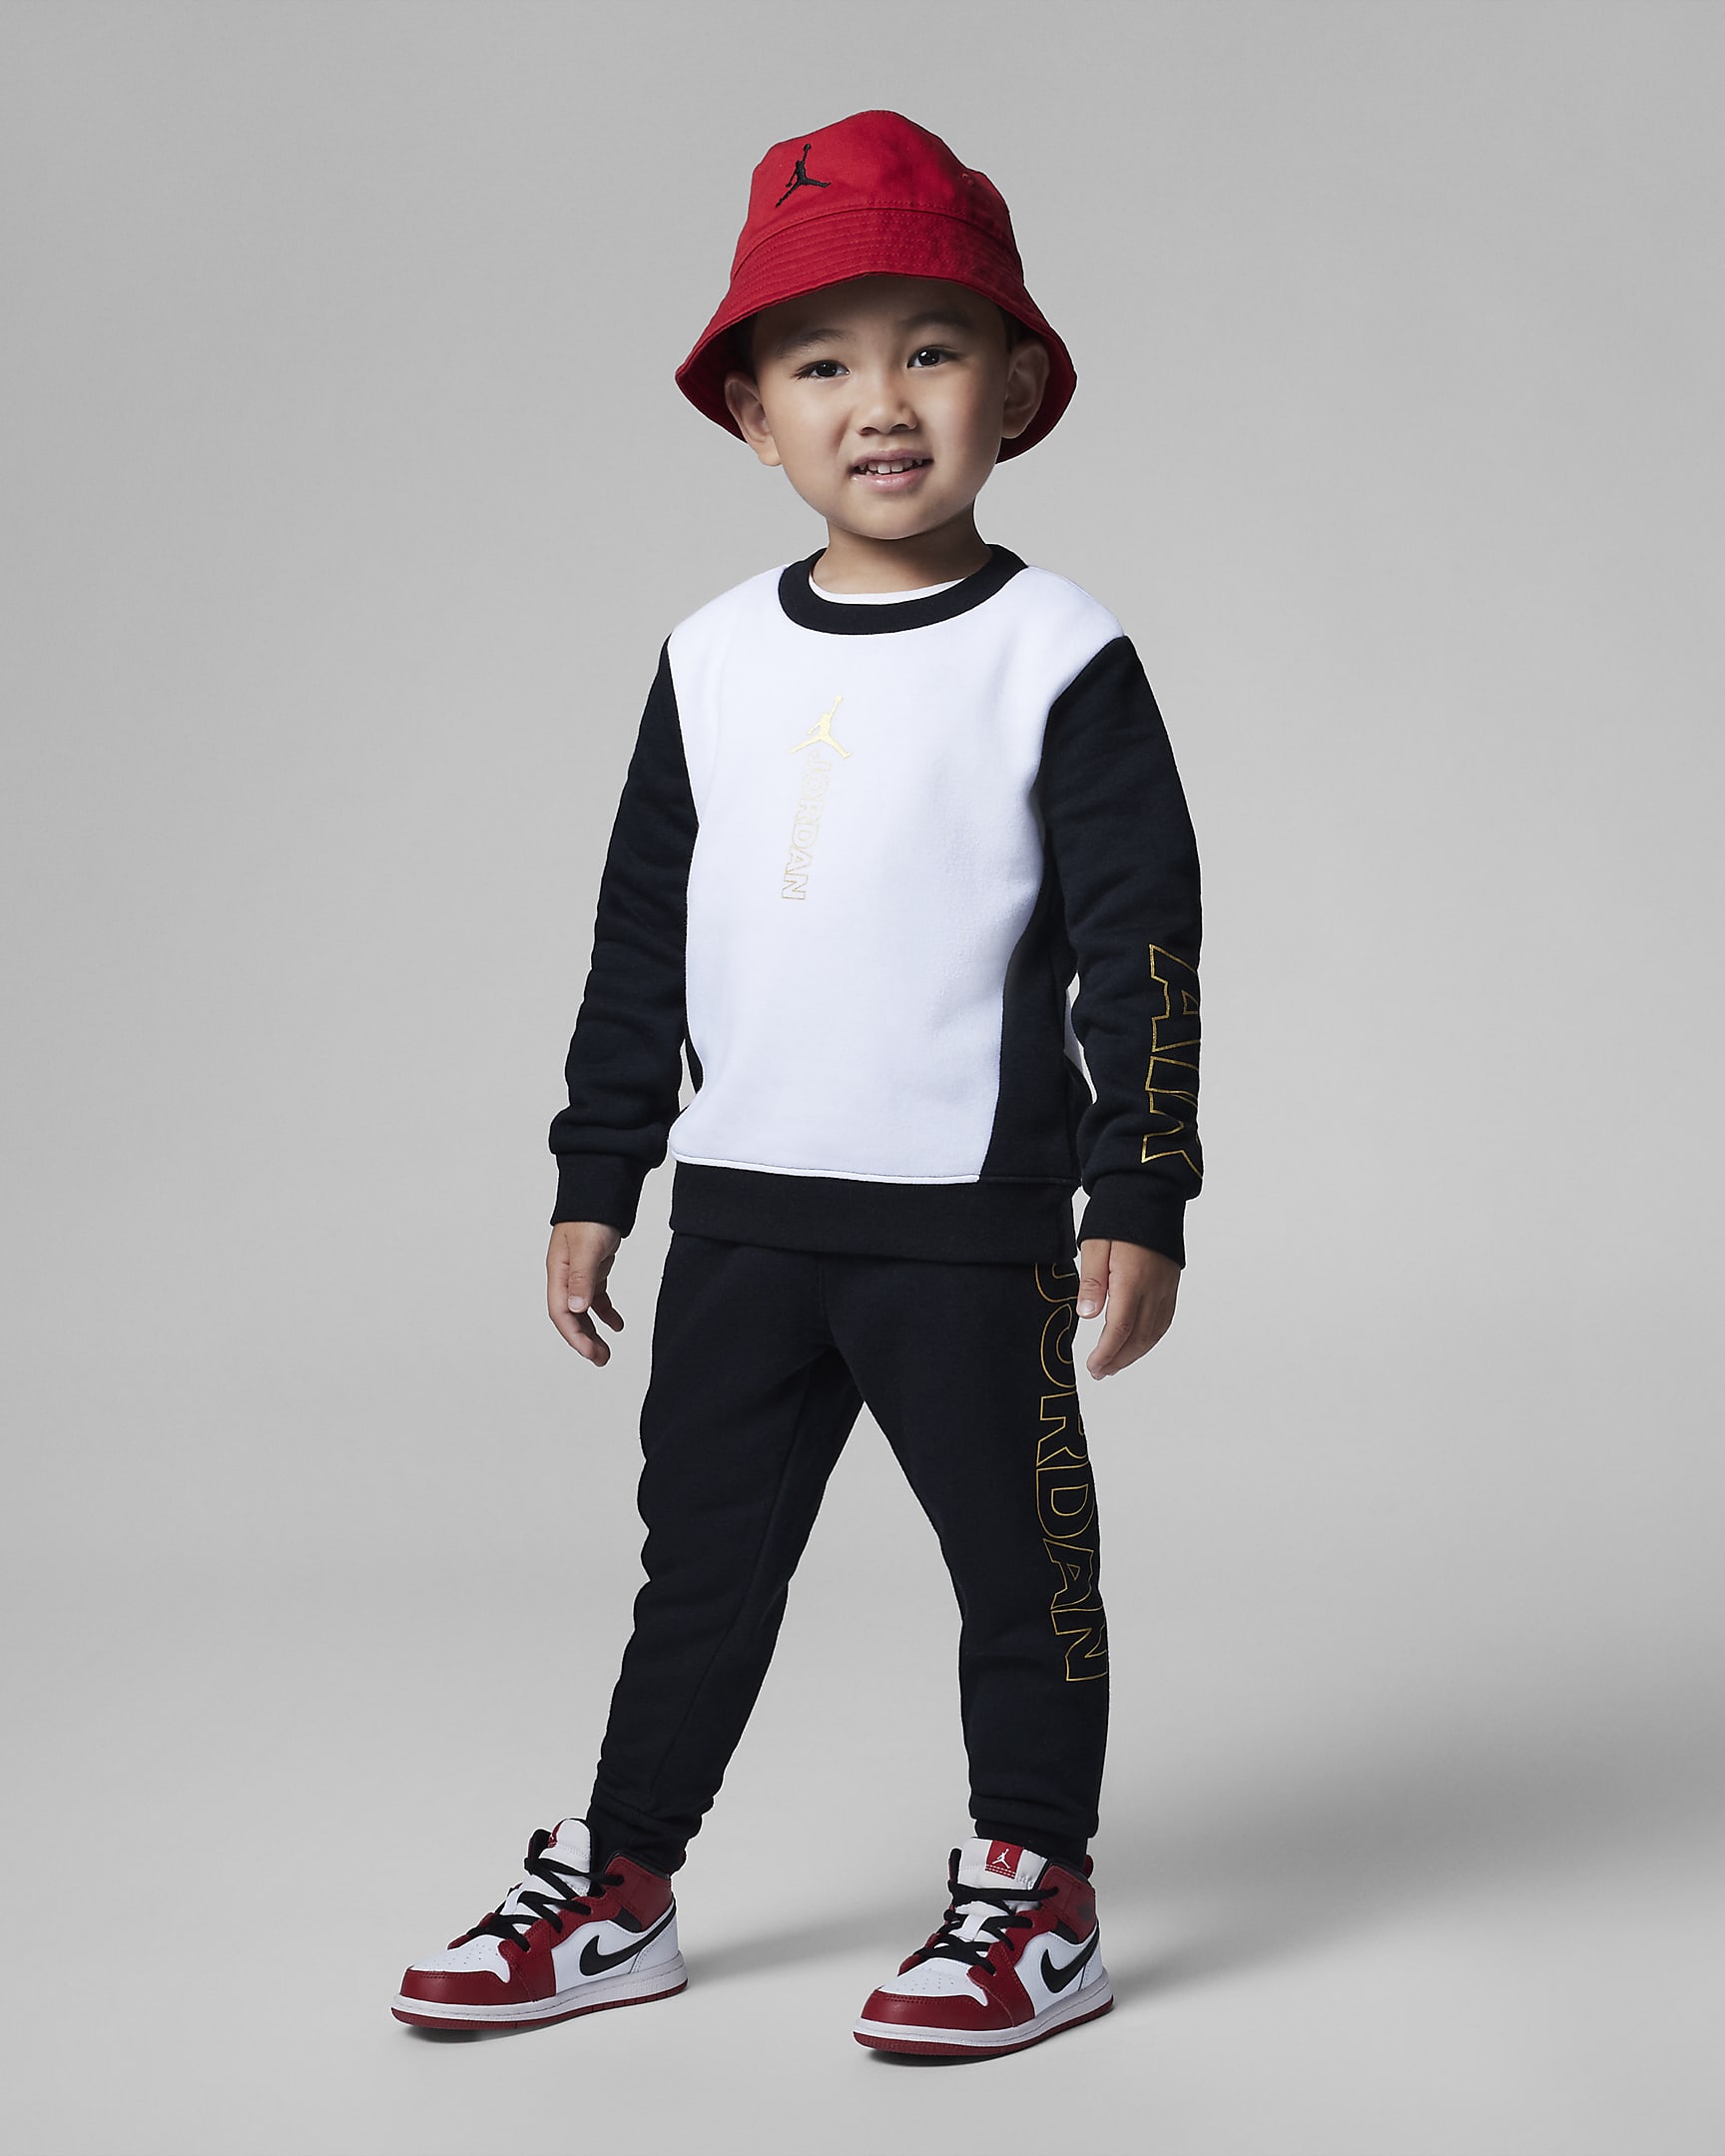 Jordan Holiday Shine Crew Set Toddler Set. Nike UK